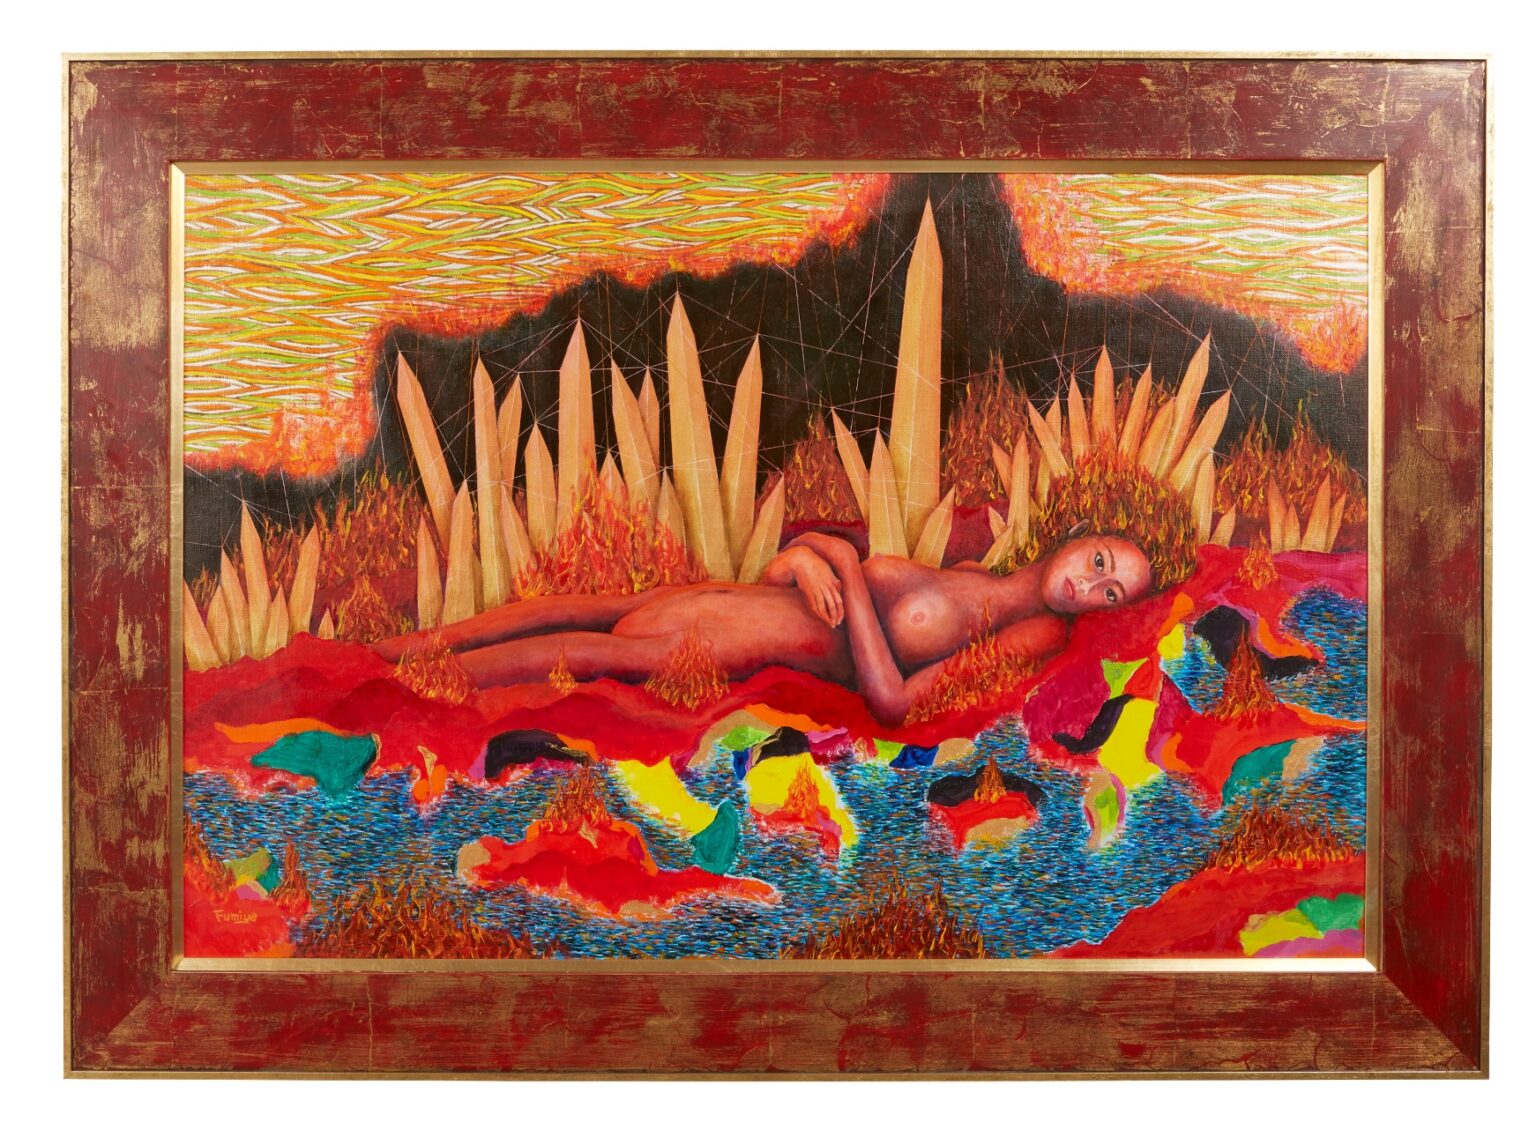 「ペレの洞窟」藤井フミヤ（2022年/油彩、キャンバス/61×91cm）
ハワイ諸島の火山の女神ペレが住む洞窟をイメージした作品